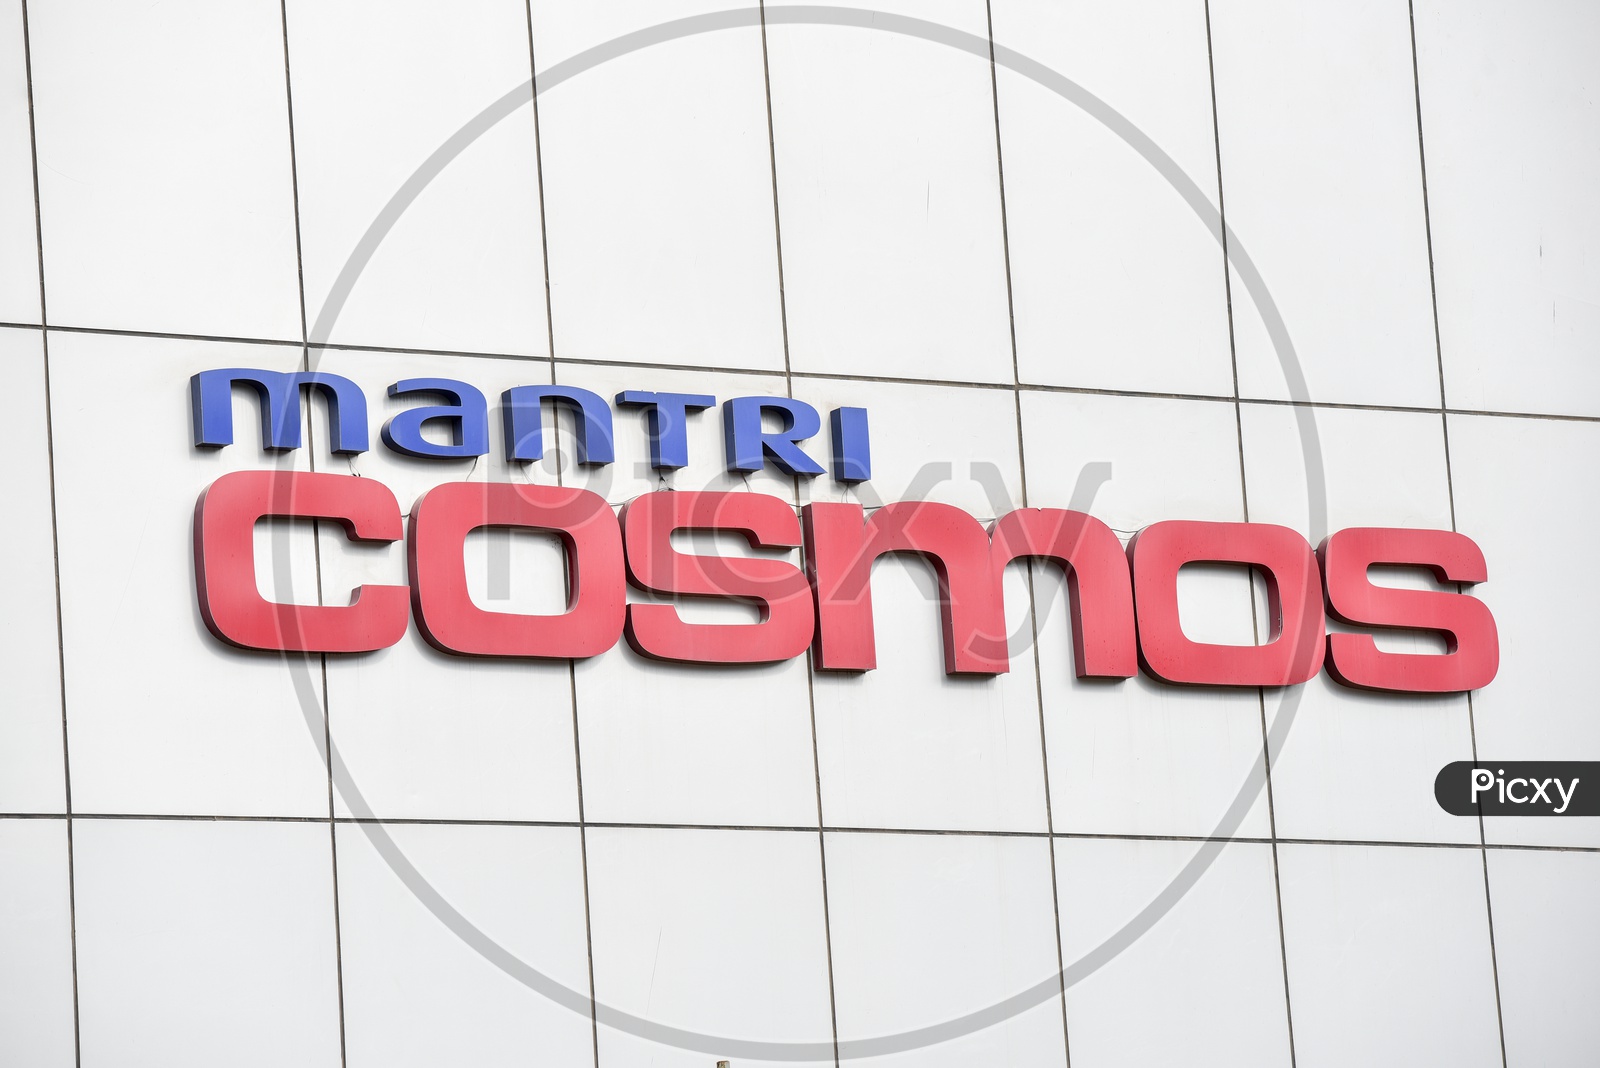 Mantri Cosmos  Corporate Company Name on Building Facade